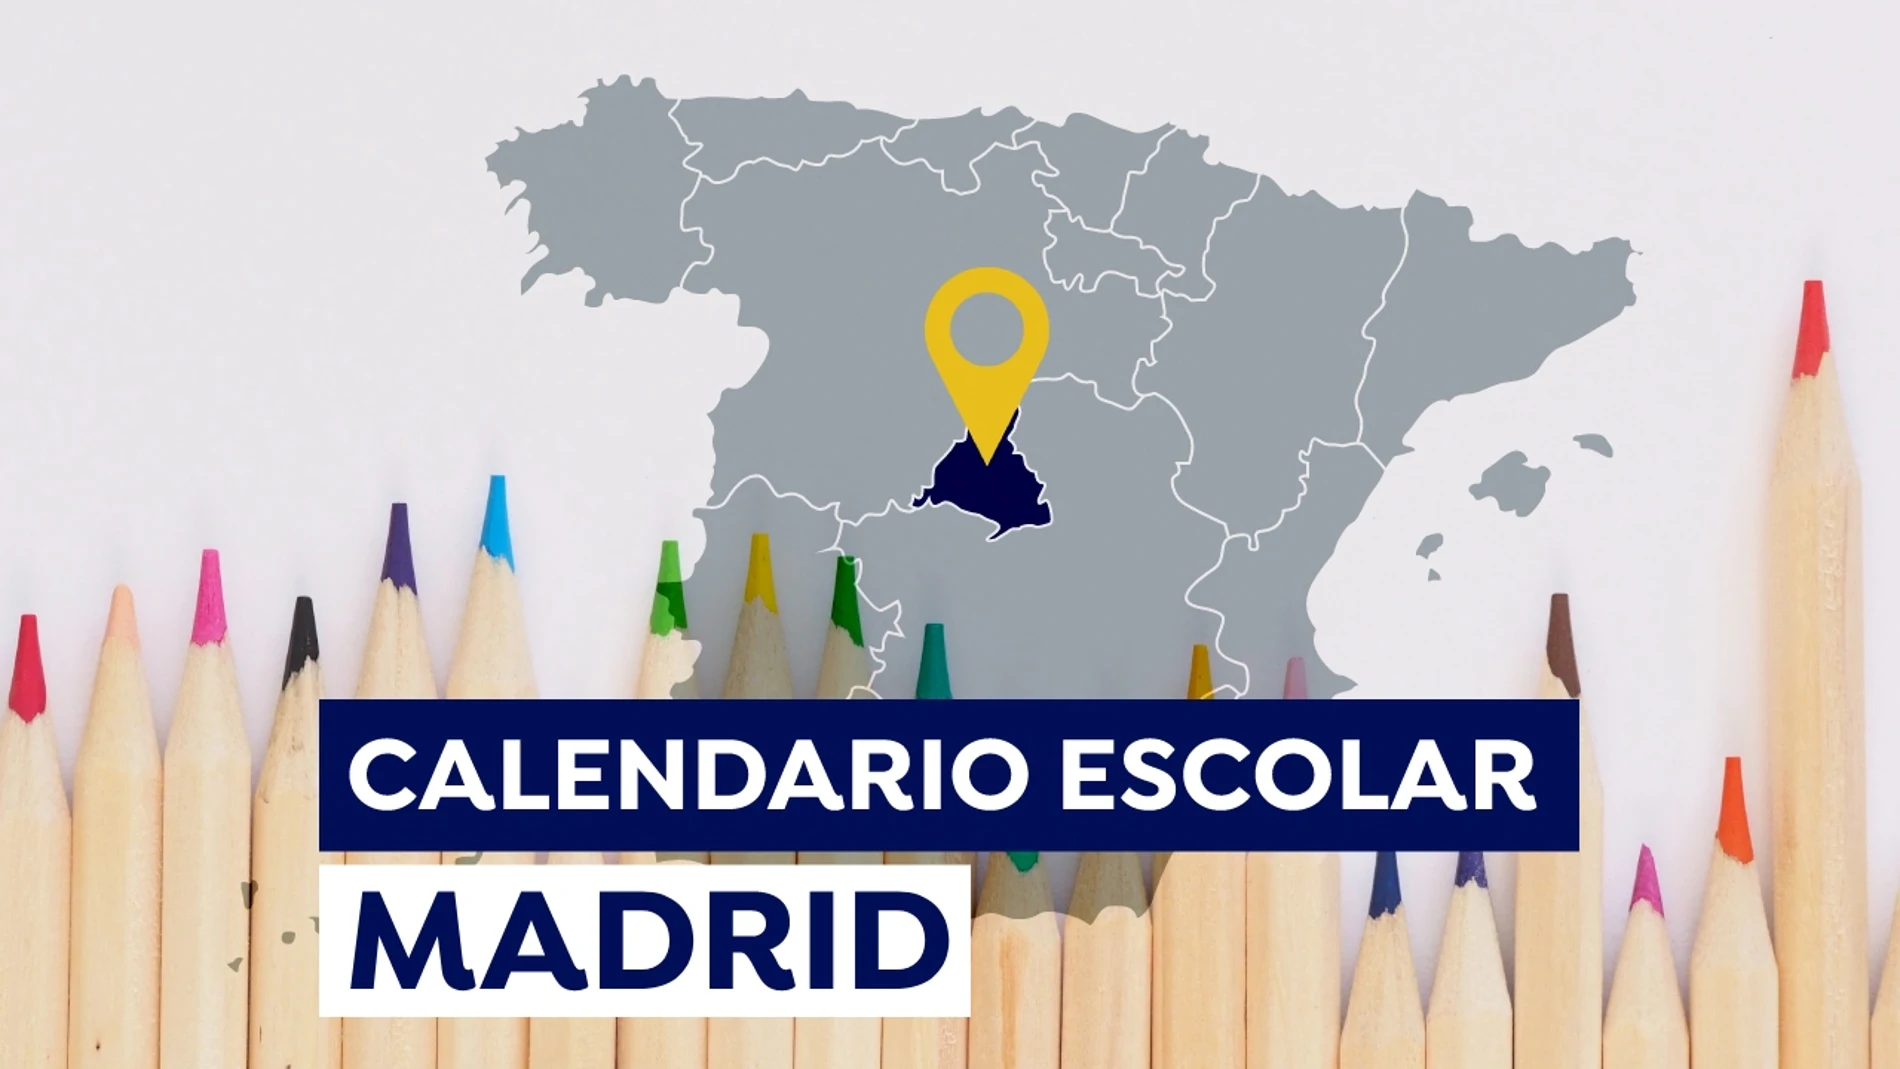 Calendario escolar Madrid 2021-2022: Fechas de inicio de las clases, días lectivos y vacaciones